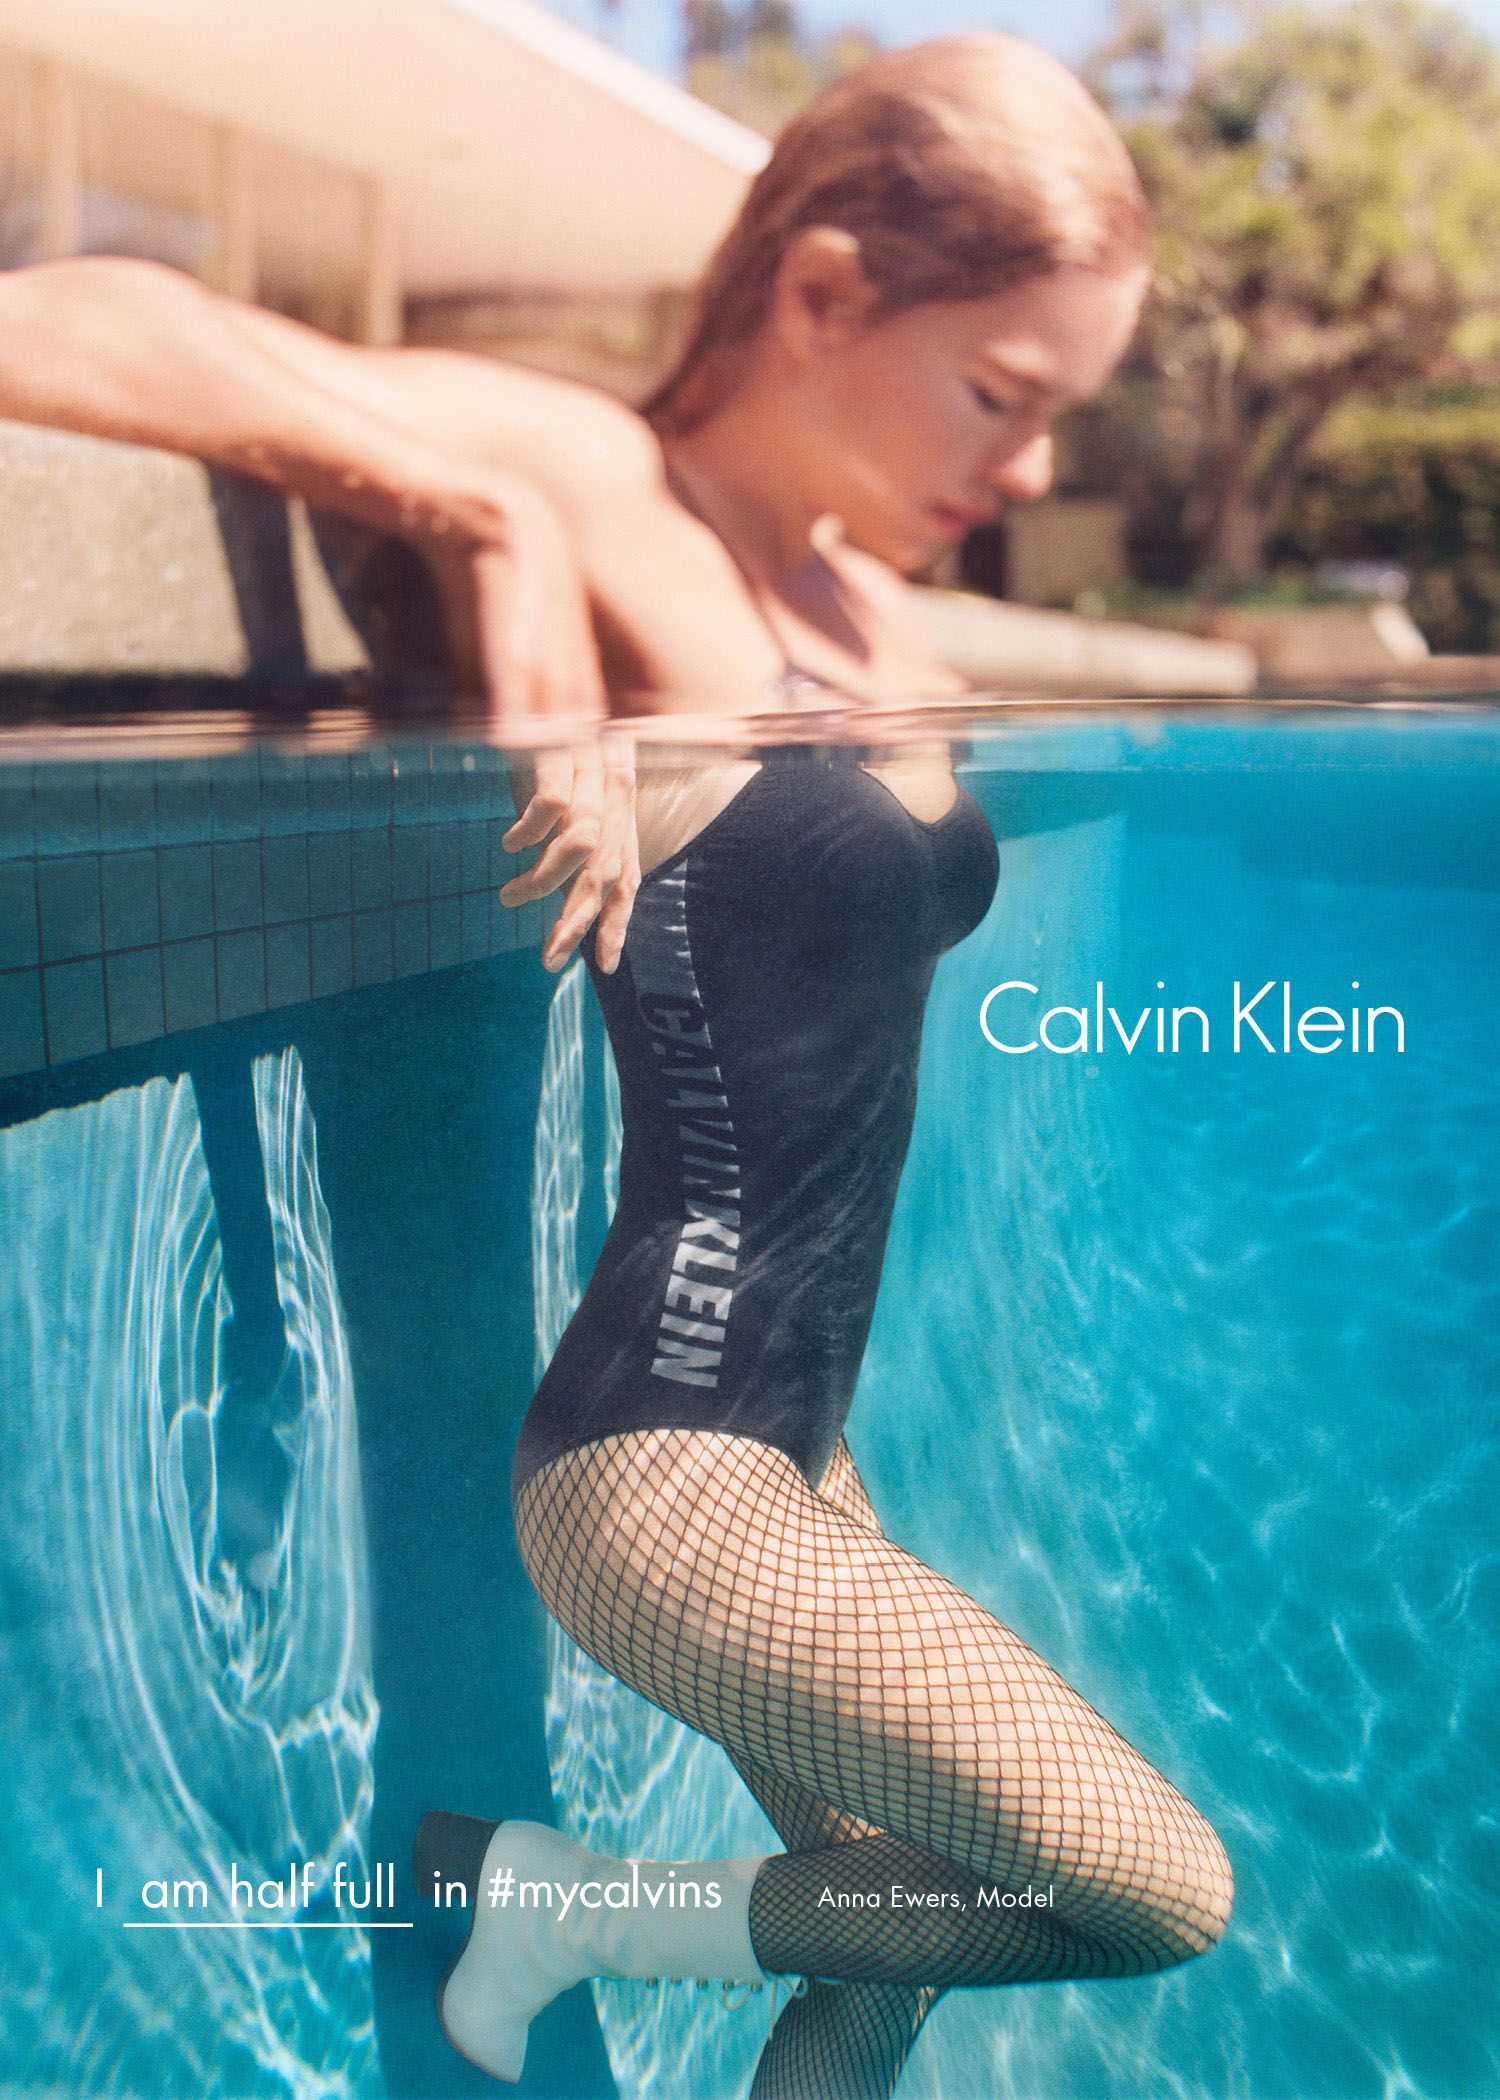 Sceptisch Jongleren lokaal Calvin Klein Releases Another Star-Studded Campaign